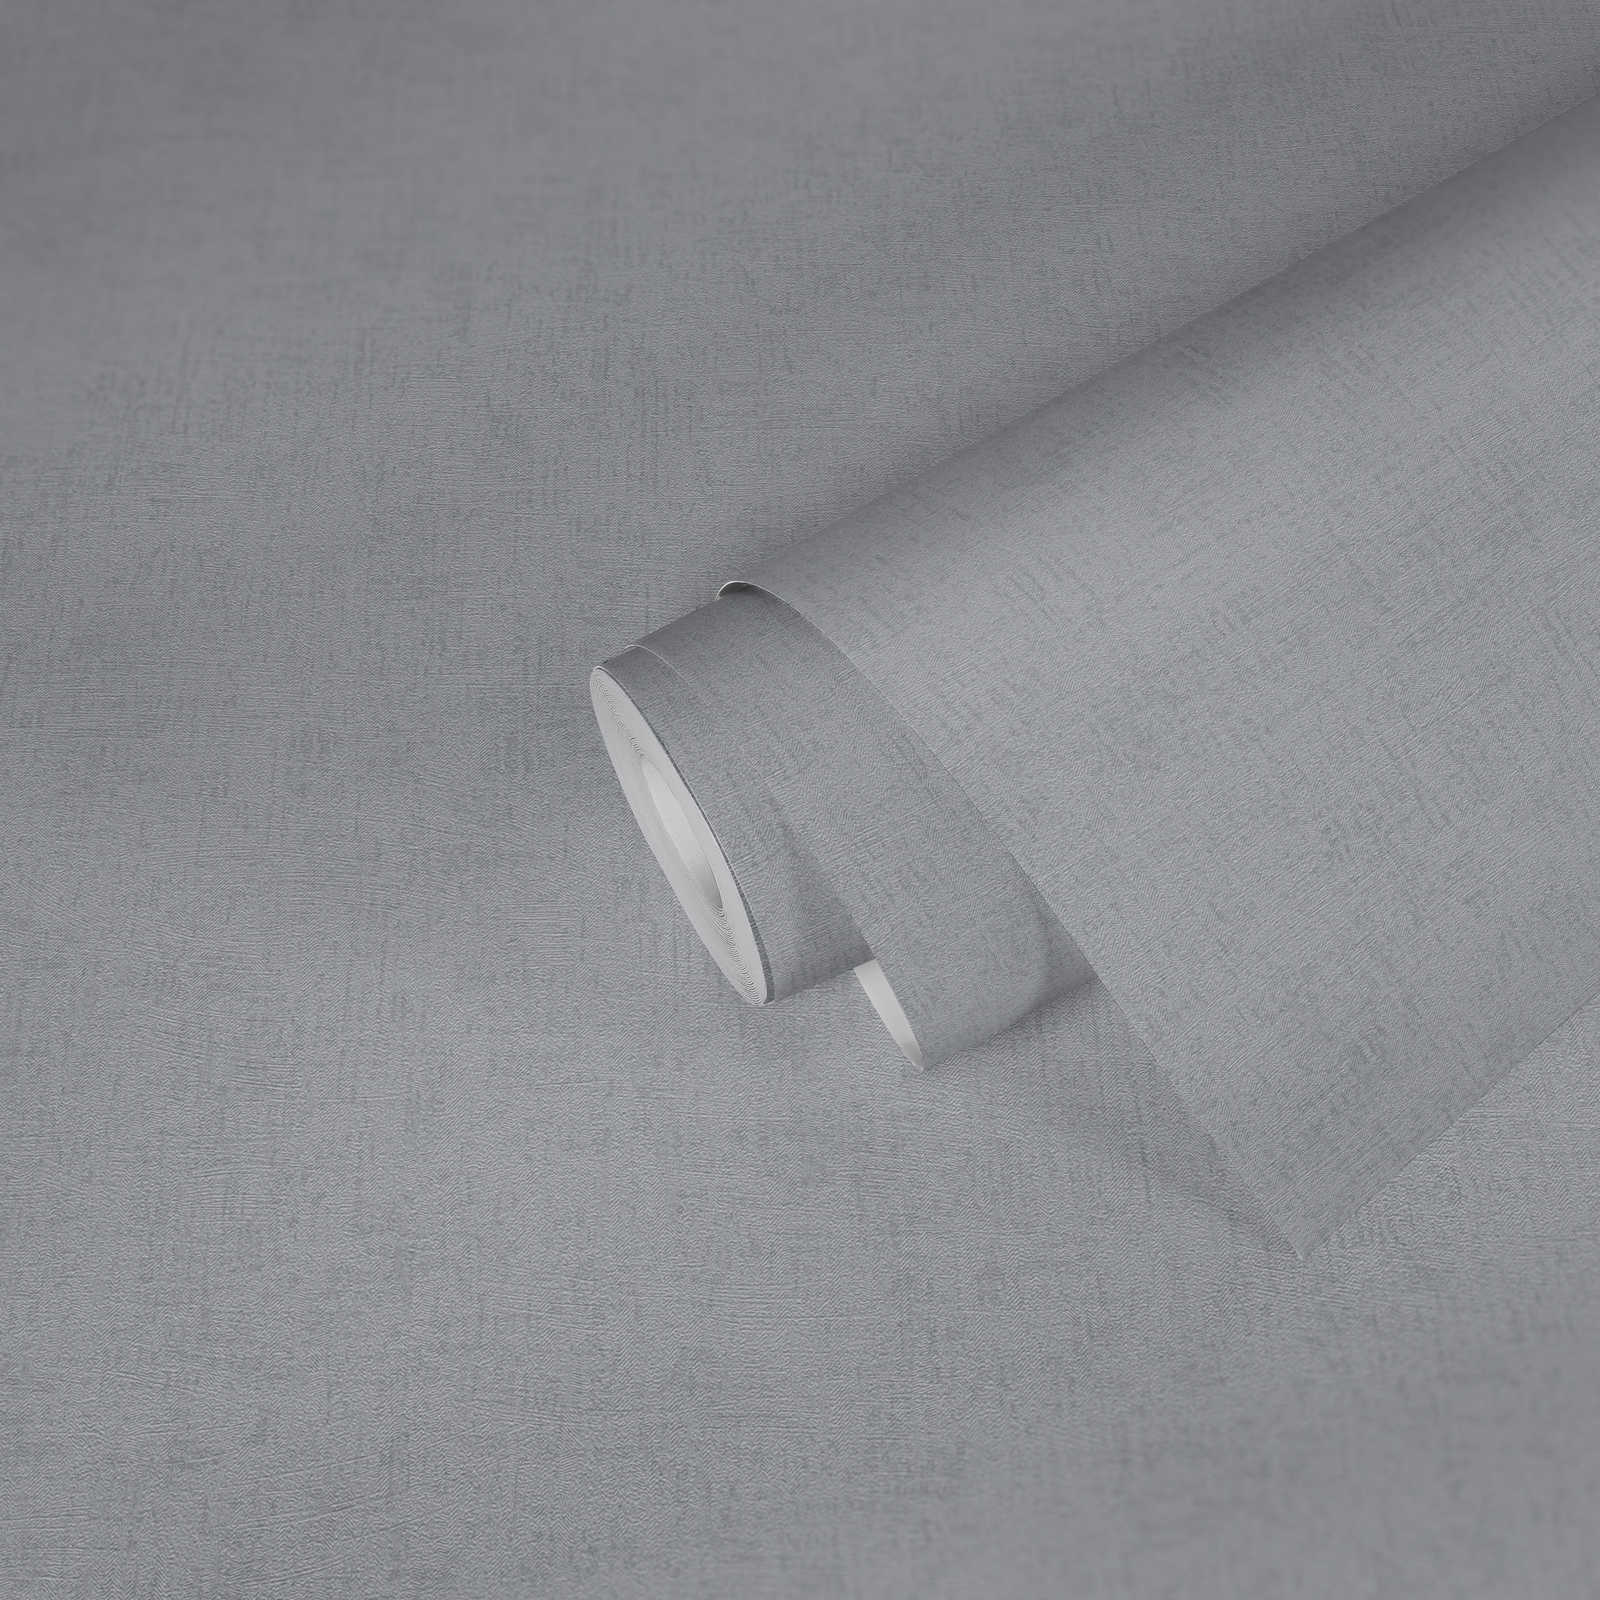             Papier peint chiné gris uni avec éclat métallique
        